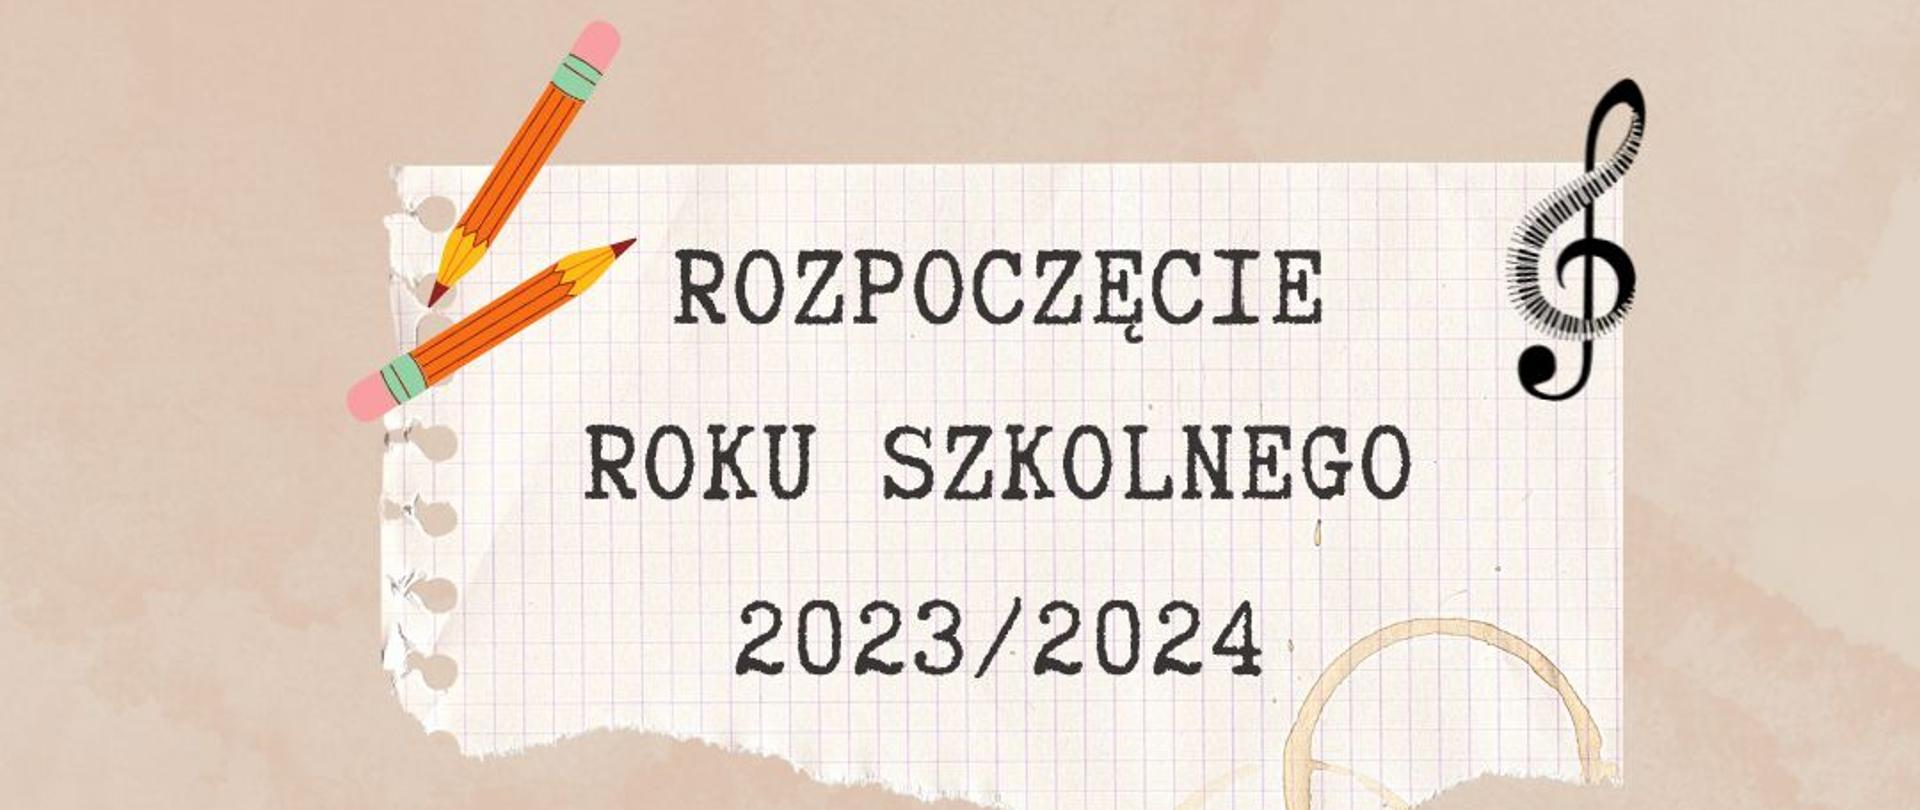 Napis "Rozpoczęcie roku szkolnego 2023/2024" na beżowym tle, w prawym rogu czarna nutka, w lewym rogu dwa ołówki.